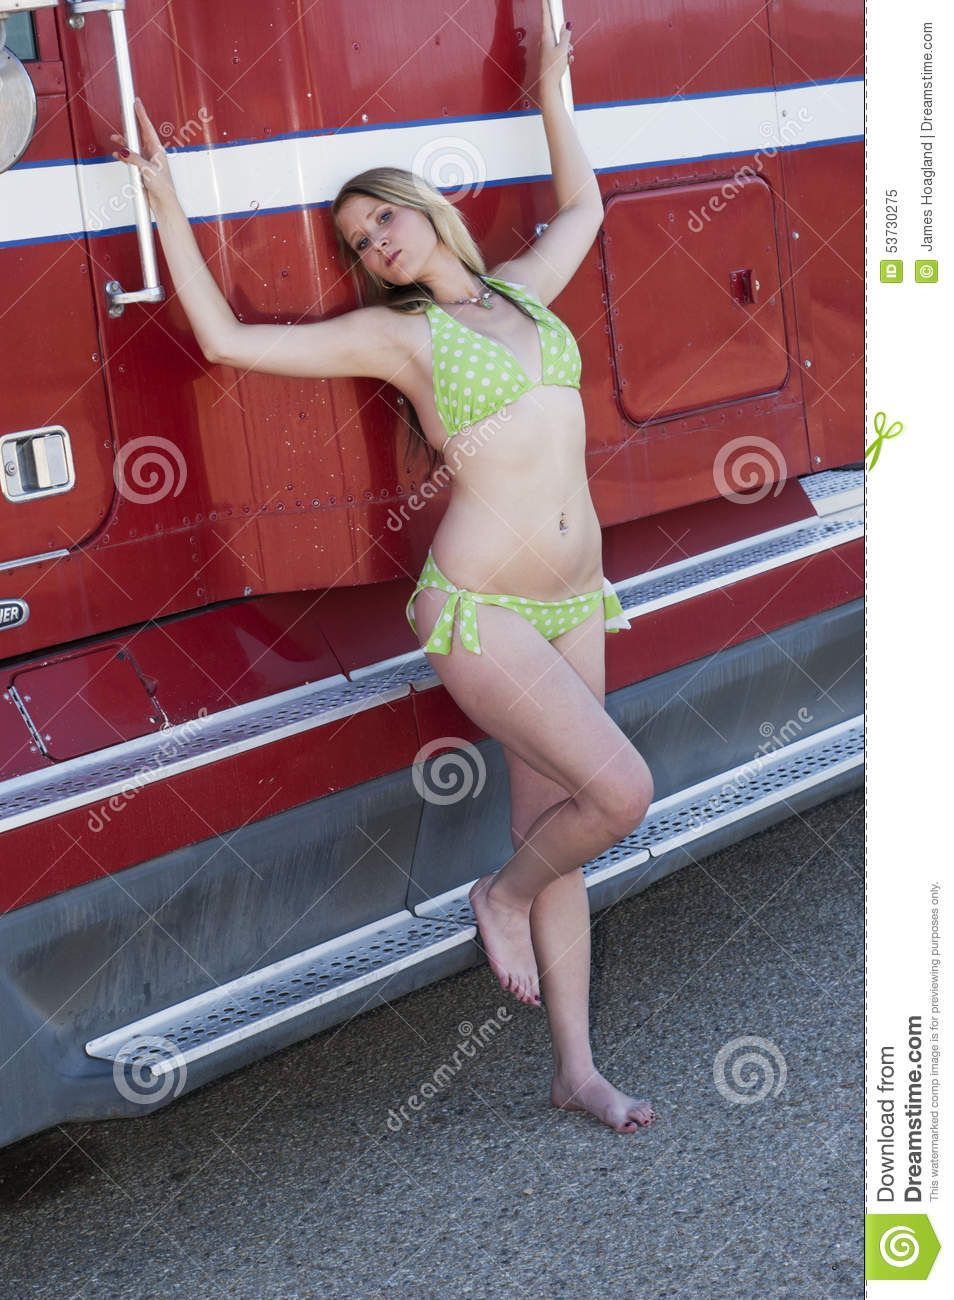 Pancake reccomend Bikini girl and truck